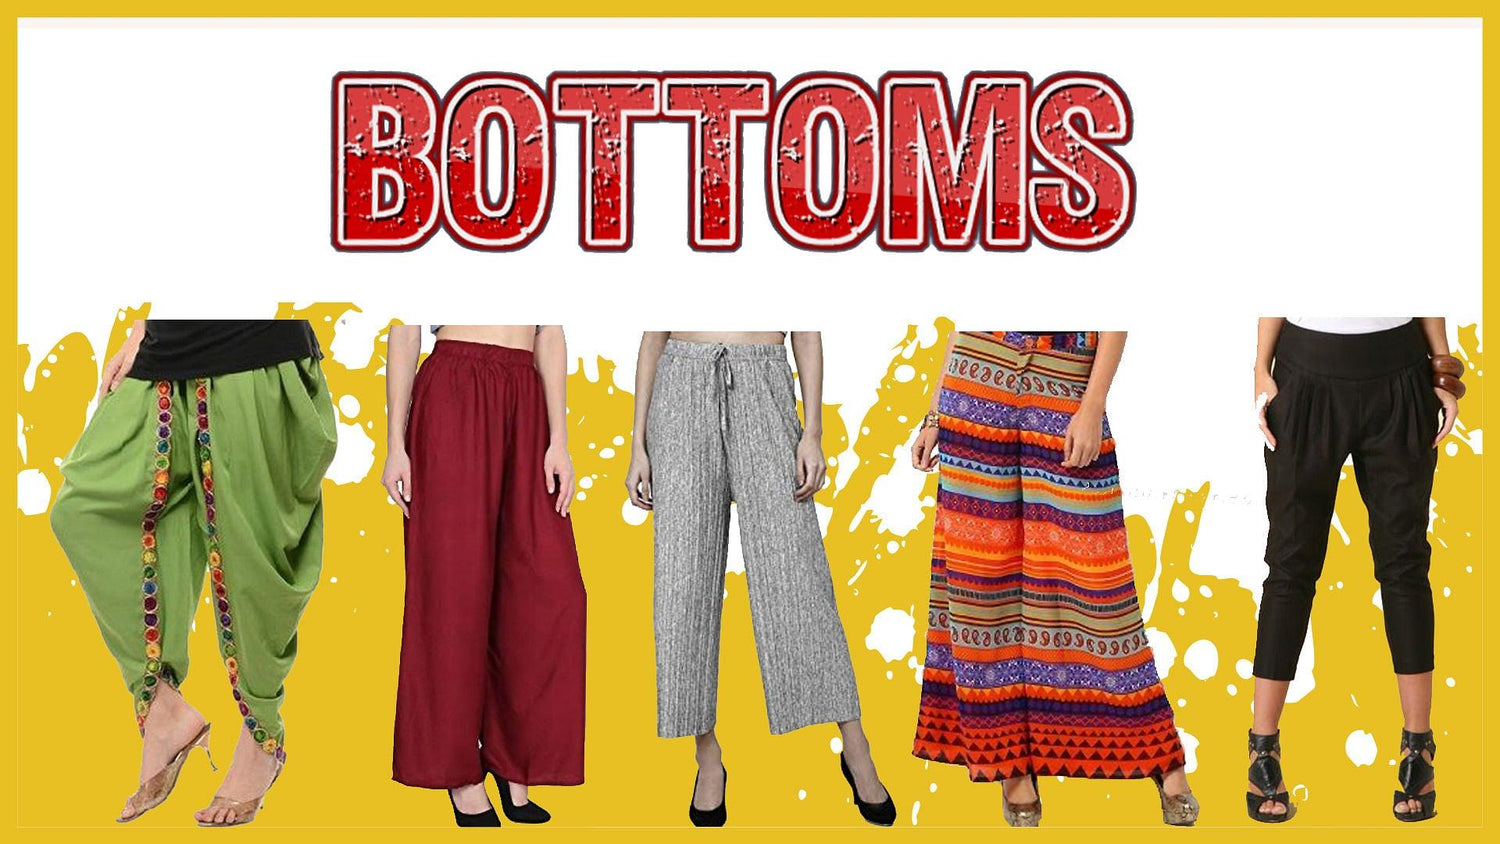 Buy Bottom Wear for Women Online